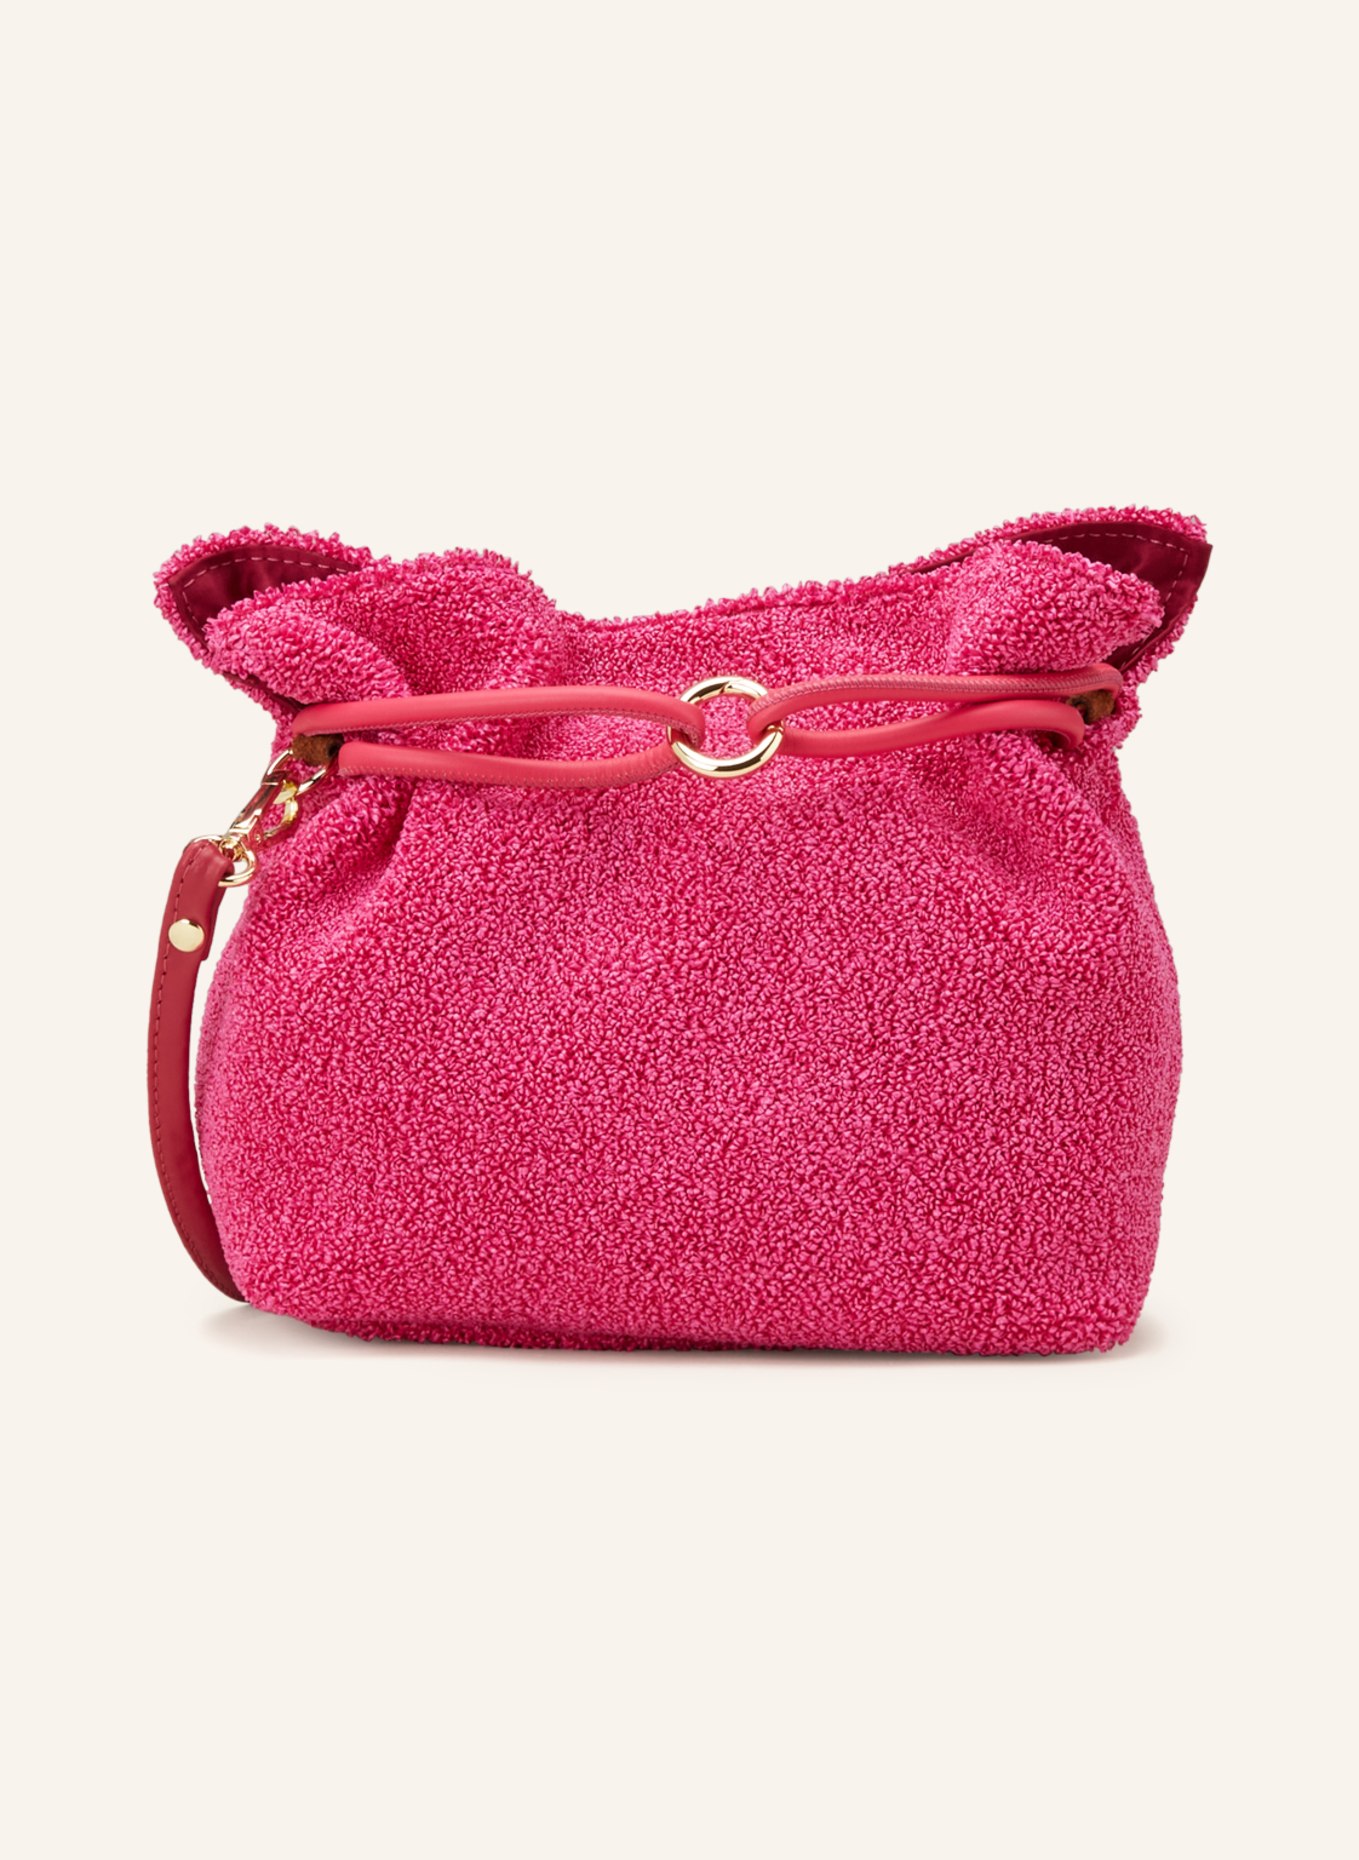 ViaMailBag Handbag ARUBA SOFT, Color: PINK (Image 1)